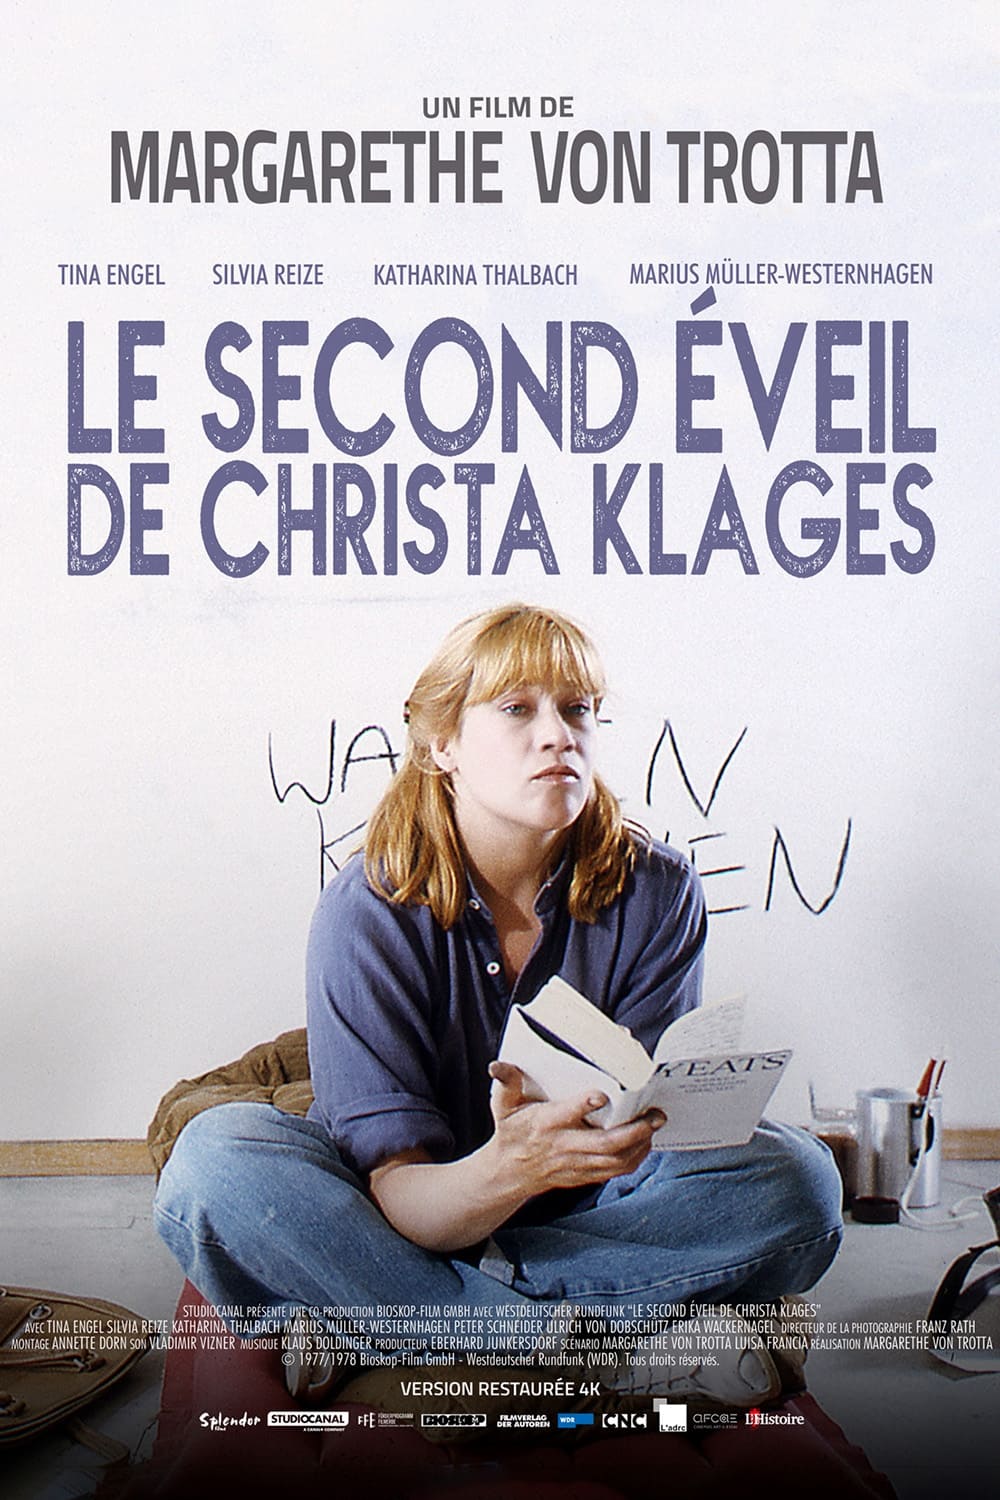 Le Second Eveil de Christa Klages